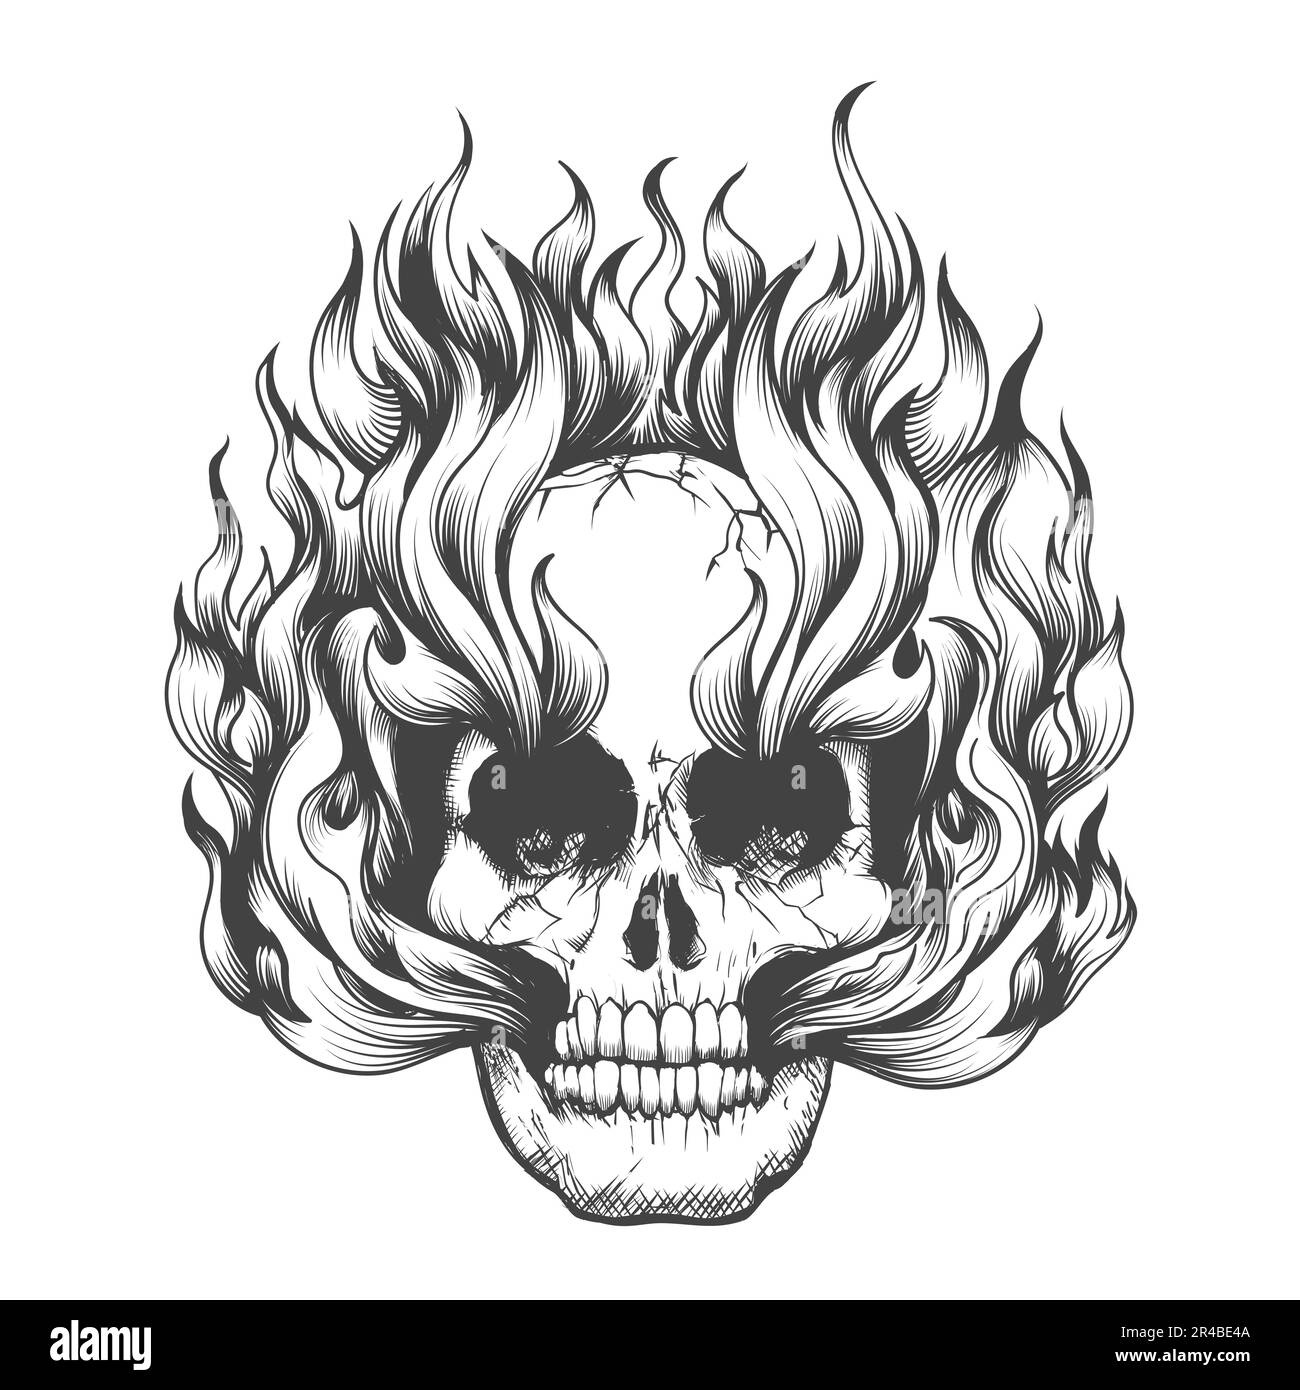 Tatuaggio monocromatico di cranio umano bruciato in punte di fiamma isolato su bianco. Illustrazione vettoriale. Illustrazione Vettoriale